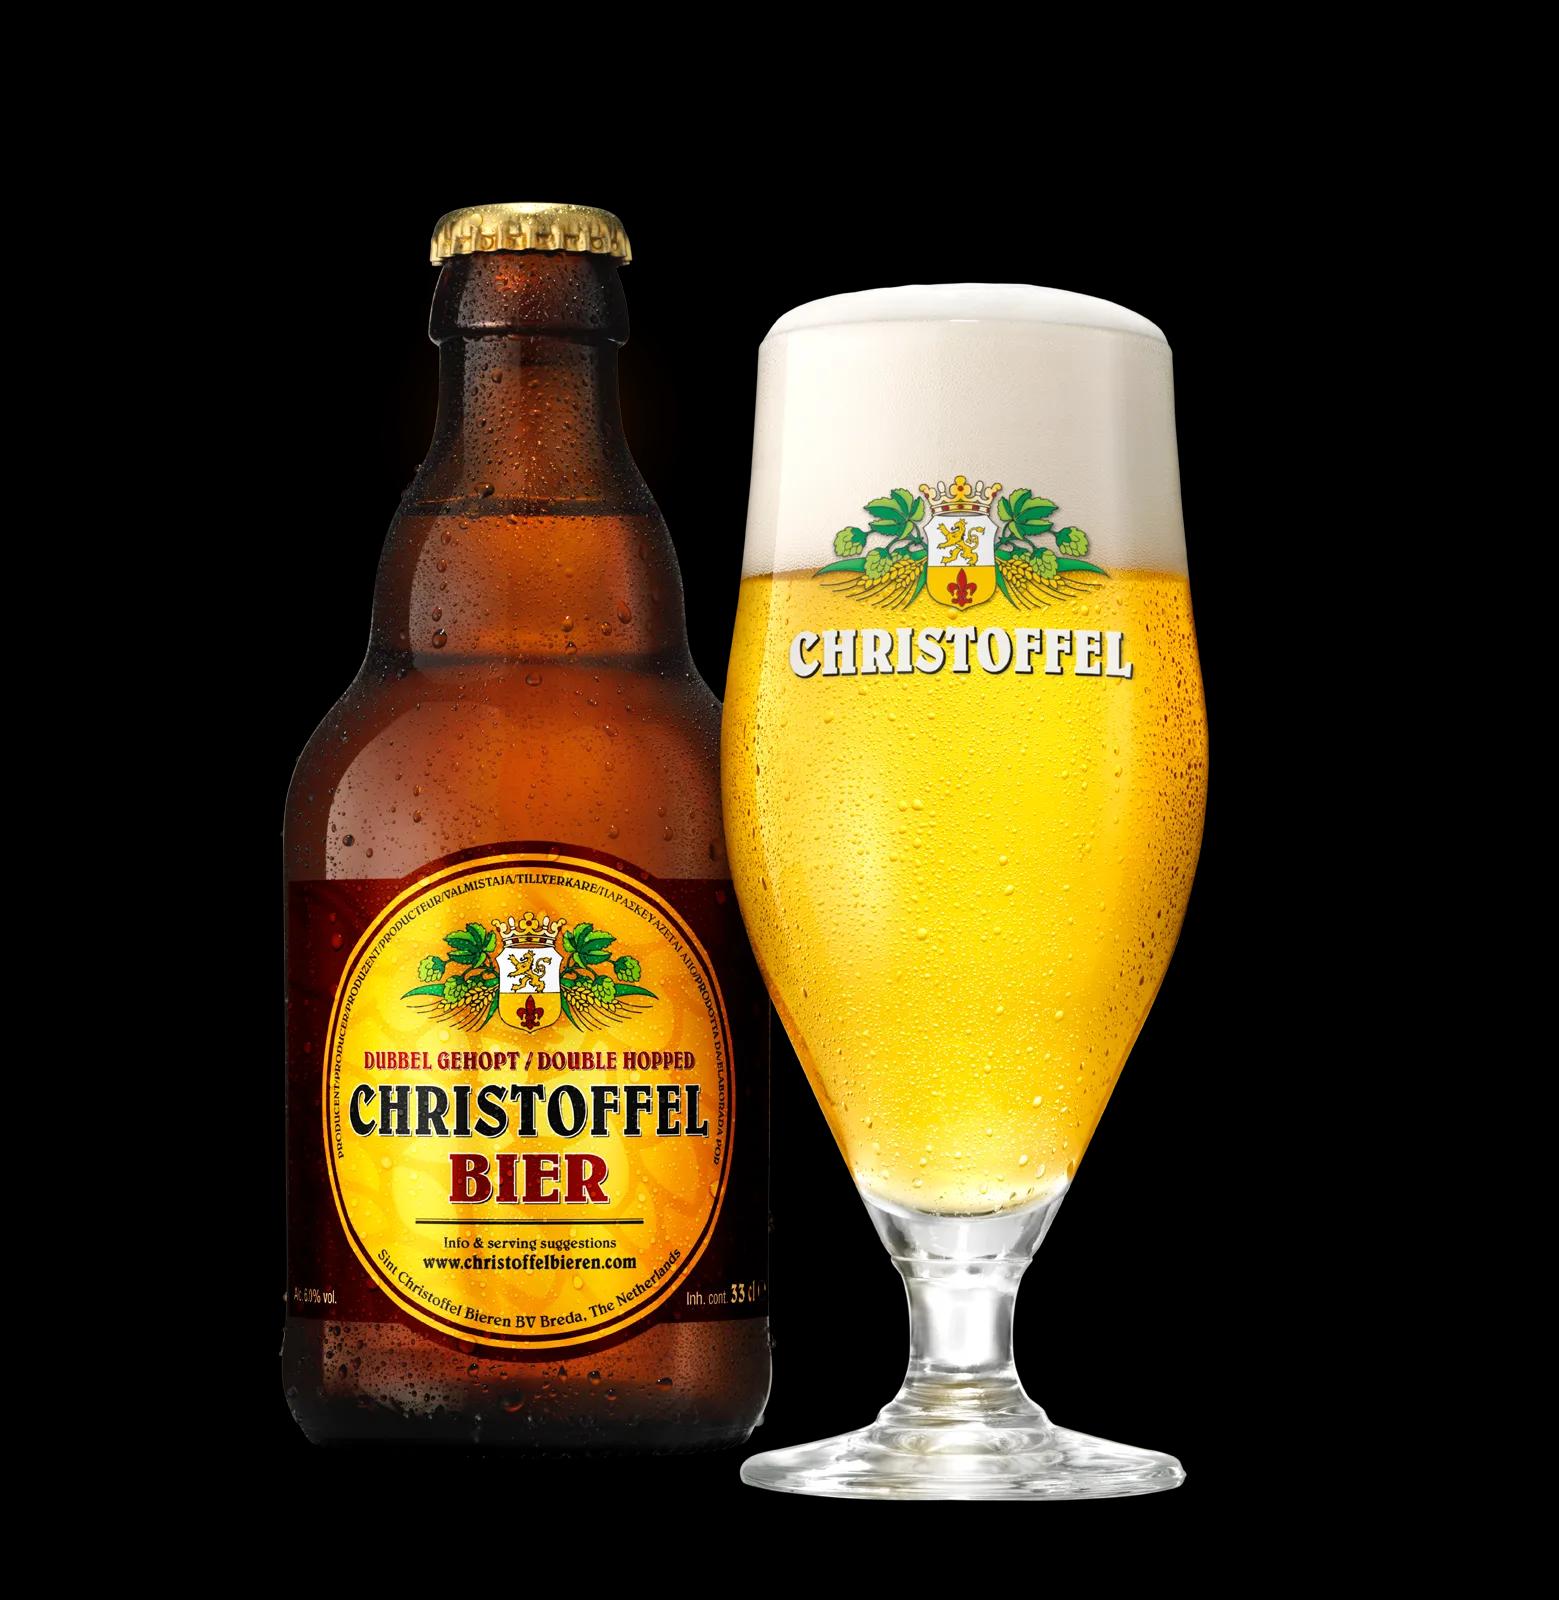 Vollwertbrot Mit Bier — Rezepte Suchen